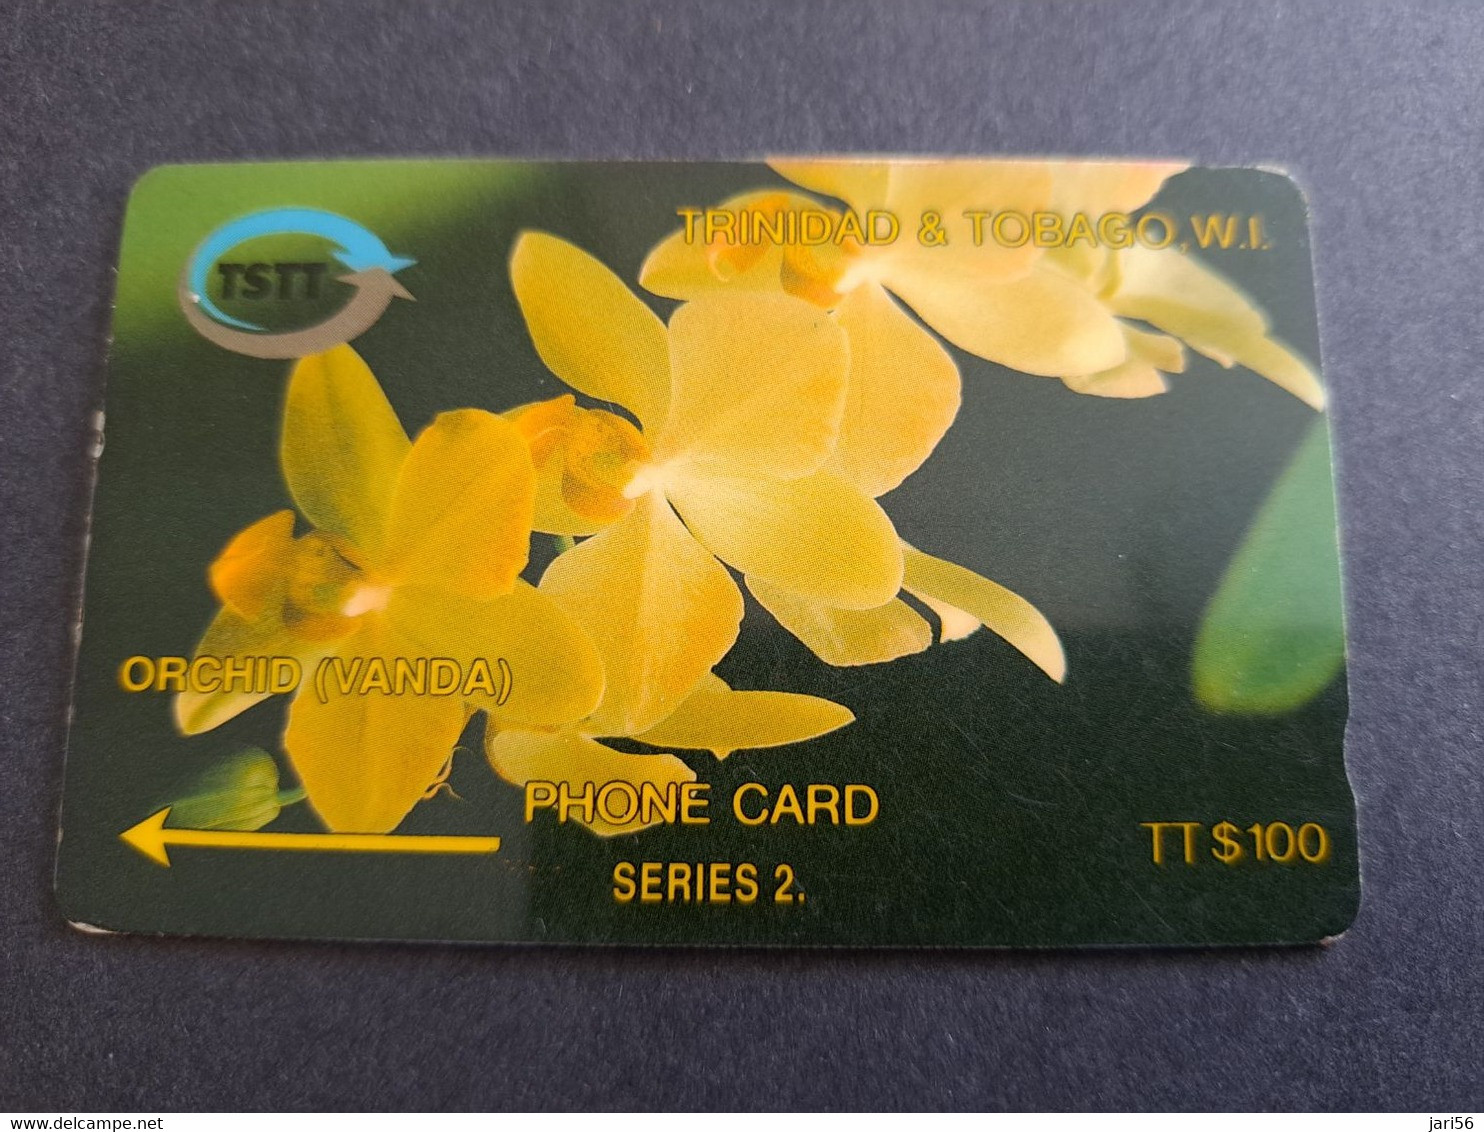 TRINIDAD & TOBAGO  GPT CARD    $100,-  5CCTD  ORCHID VANDA        Fine Used Card        ** 10306** - Trinidad & Tobago